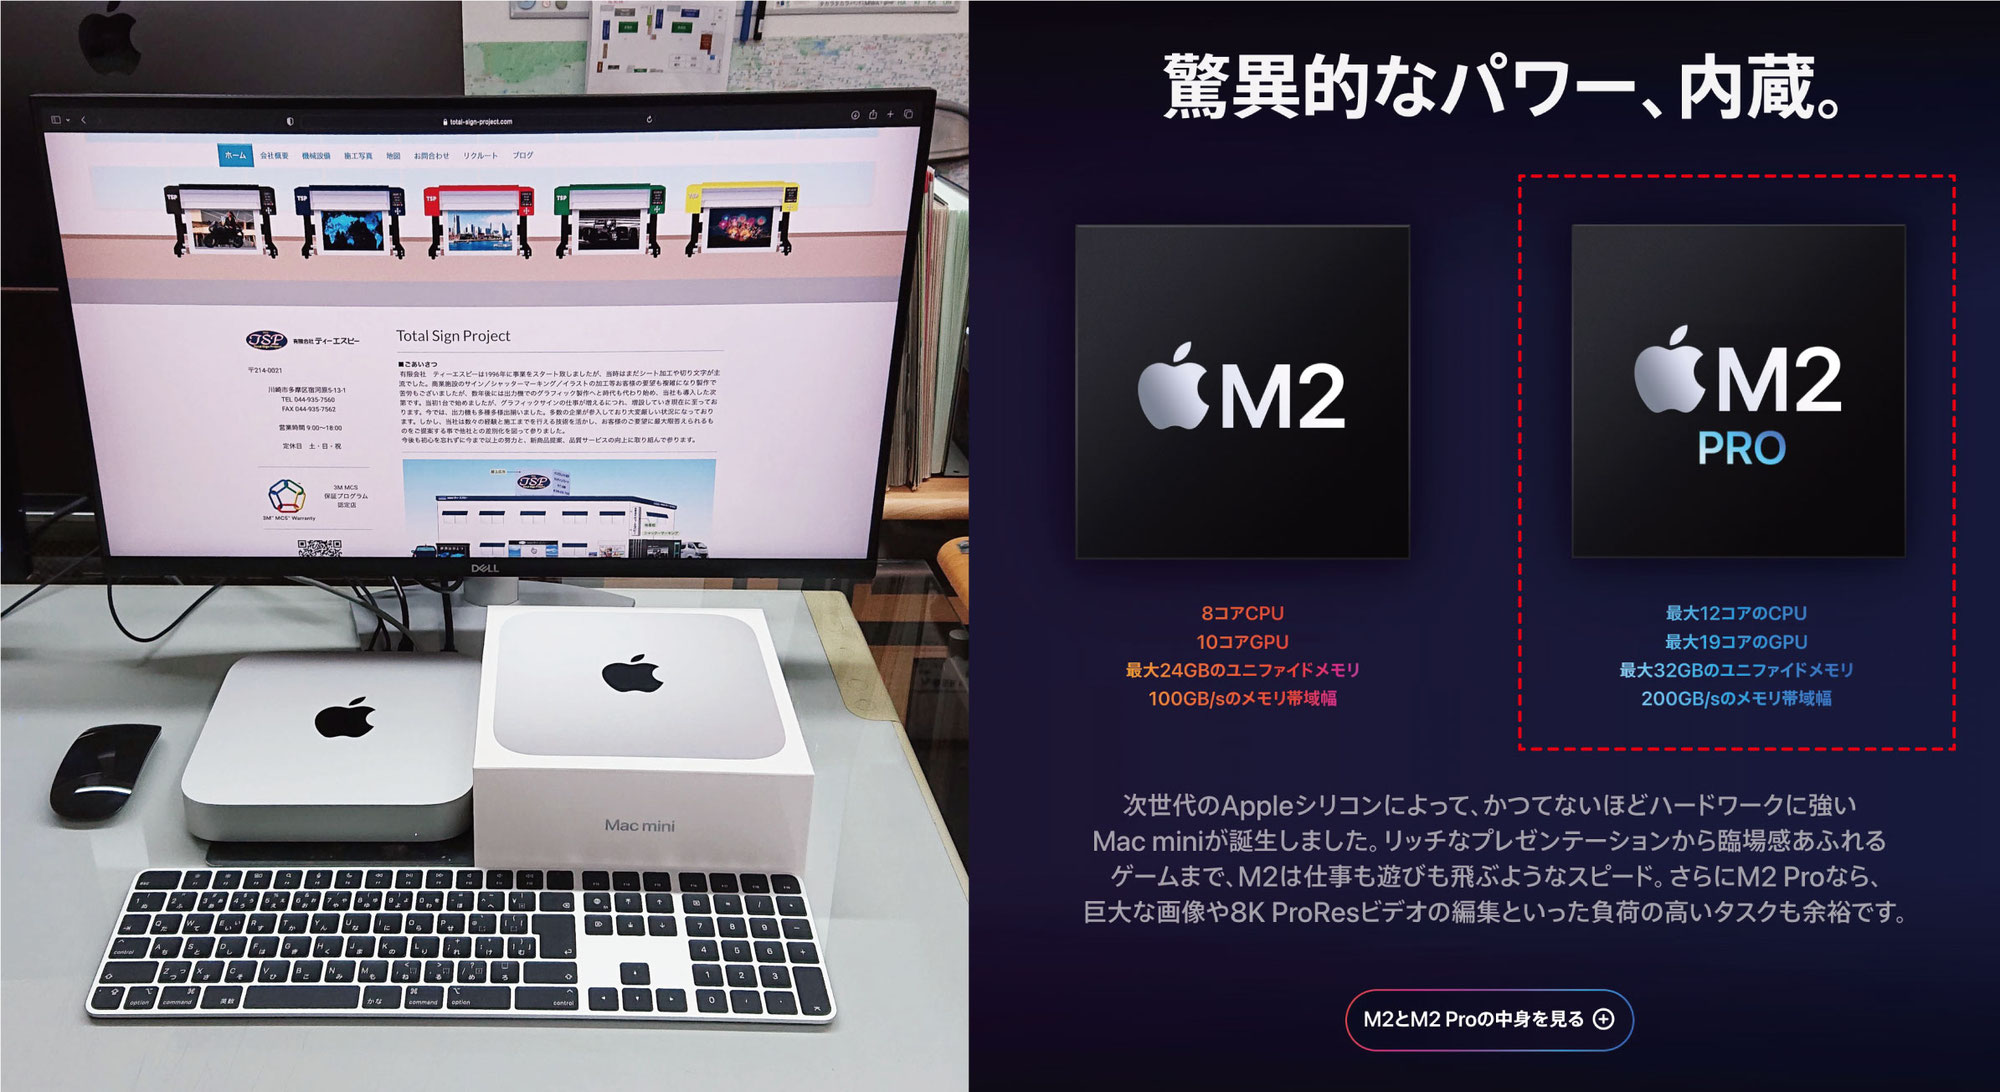 Mac mini PRO 導入